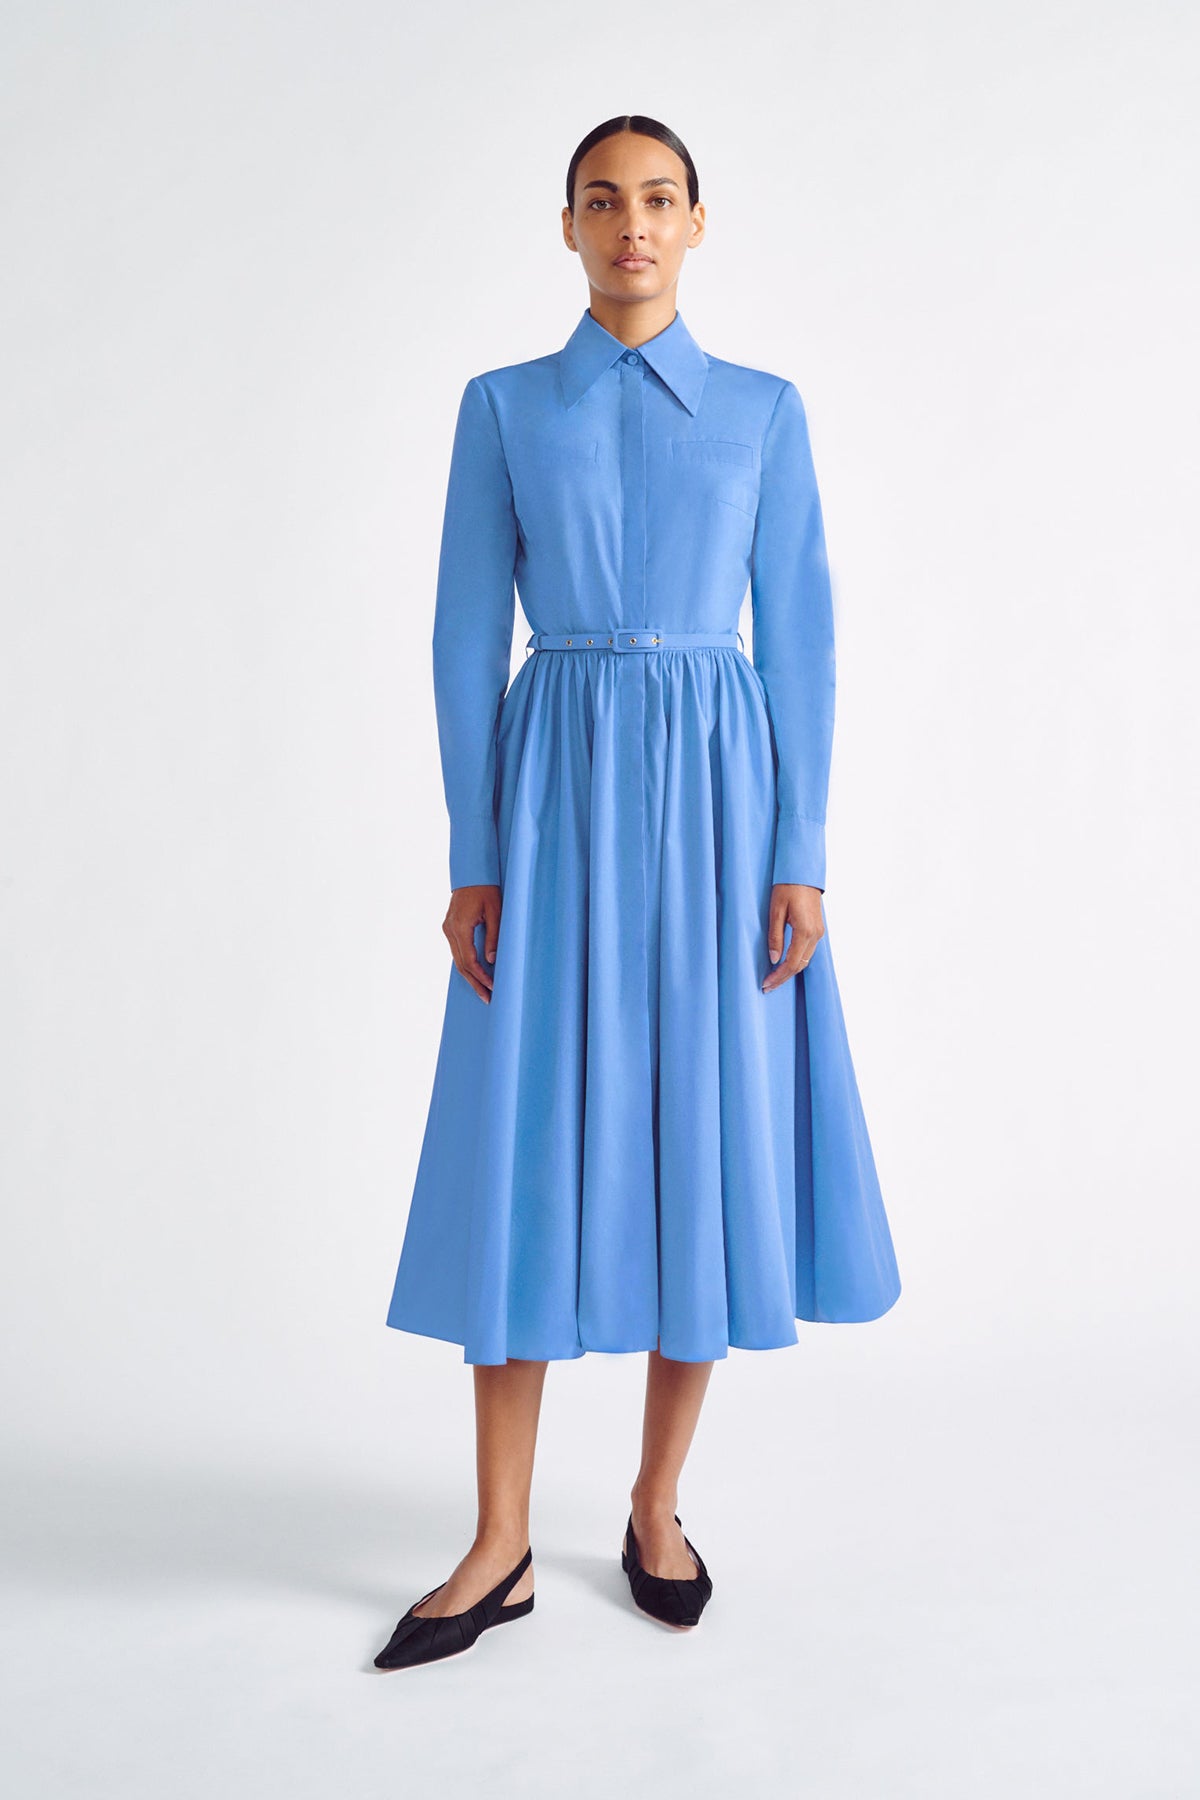 Emilia Wickstead Blue Dress